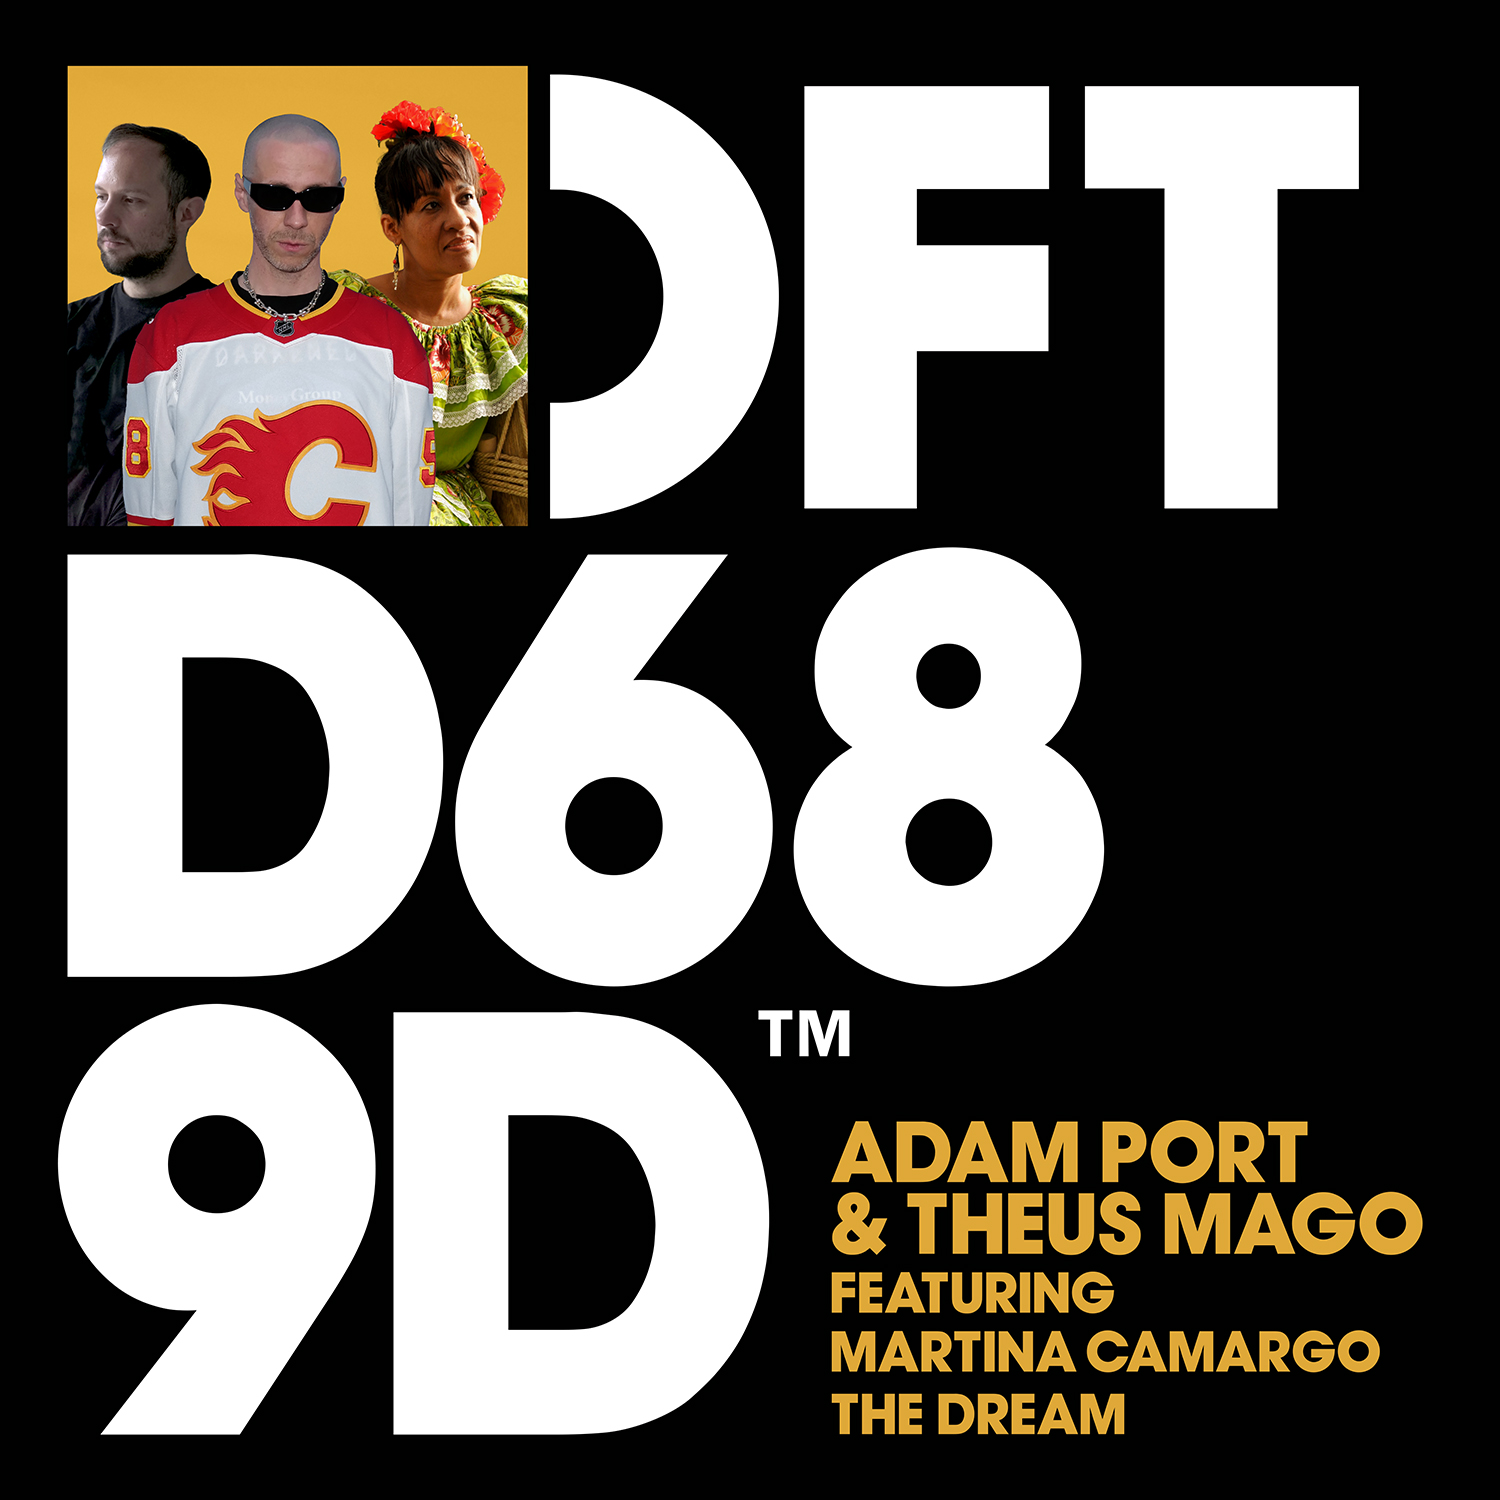 Adam Port & Theus Mago Featuring Martina Camargo